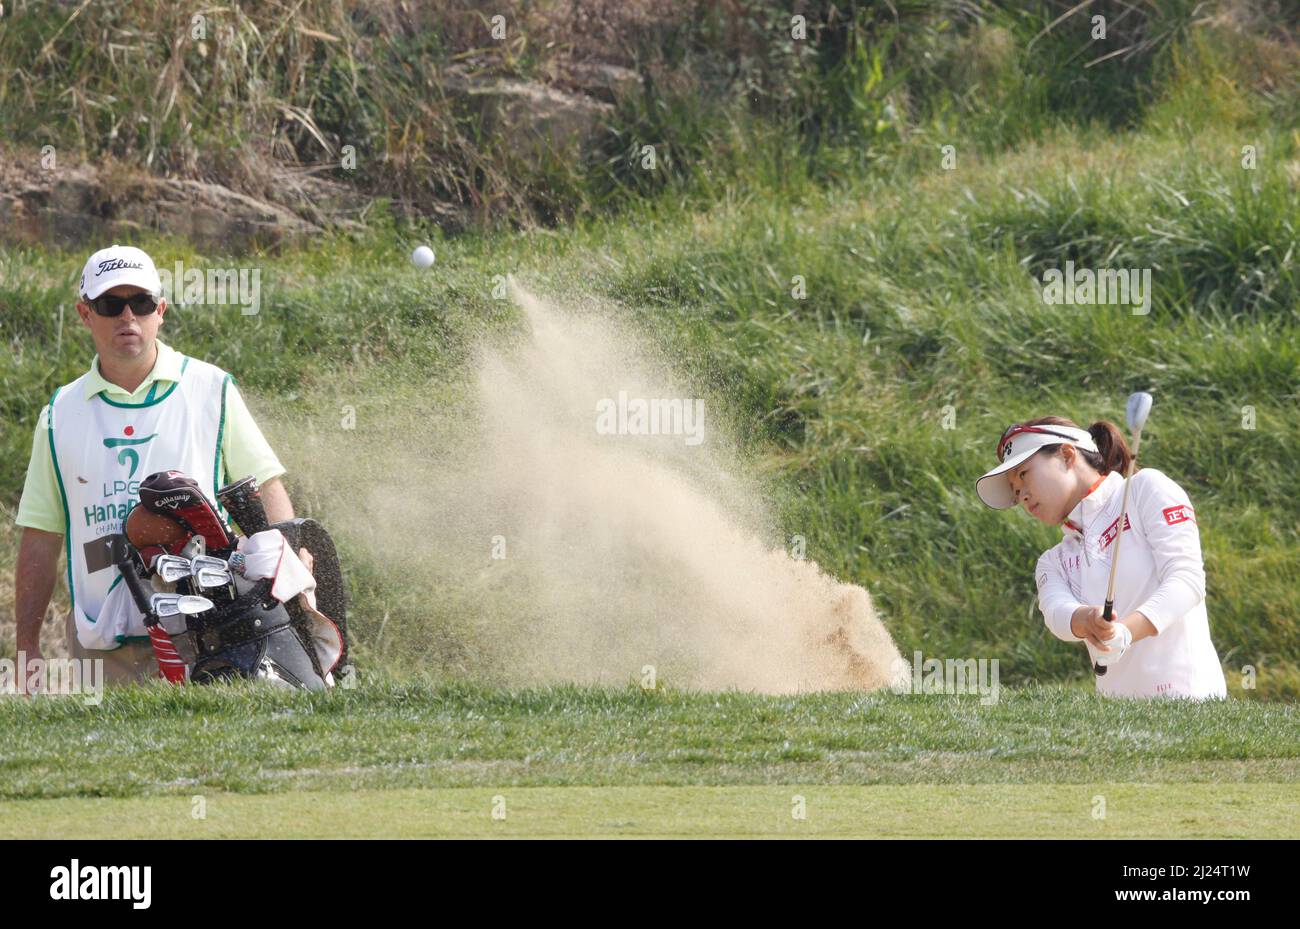 8 oct 2011-Incheon, South Korea-YOON, Seul-A de Corée du Sud, hits d'un bunker sur le 2th trous lors du championnat LPGA par Hana Bank au club de golf SKY72 à Incheon le 8 oct 2011, Corée du Sud. Banque D'Images